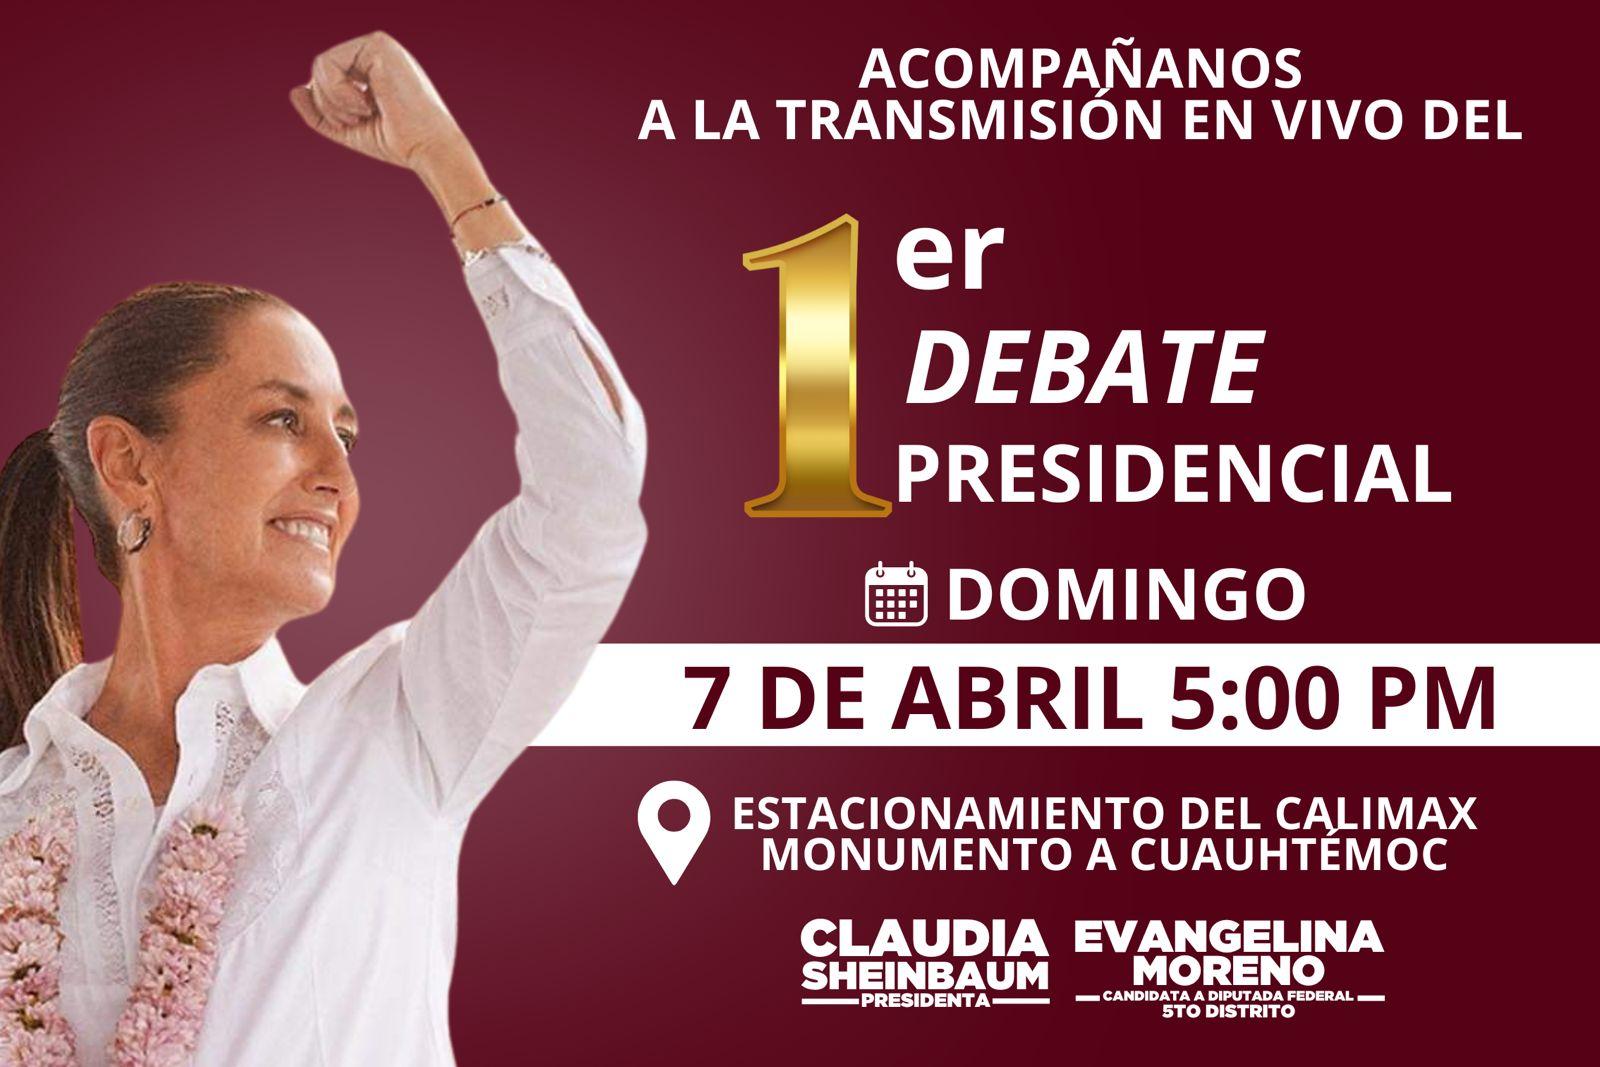 Invita Evangelina Moreno a la transmisión del debate donde participará Claudia Sheinbaim